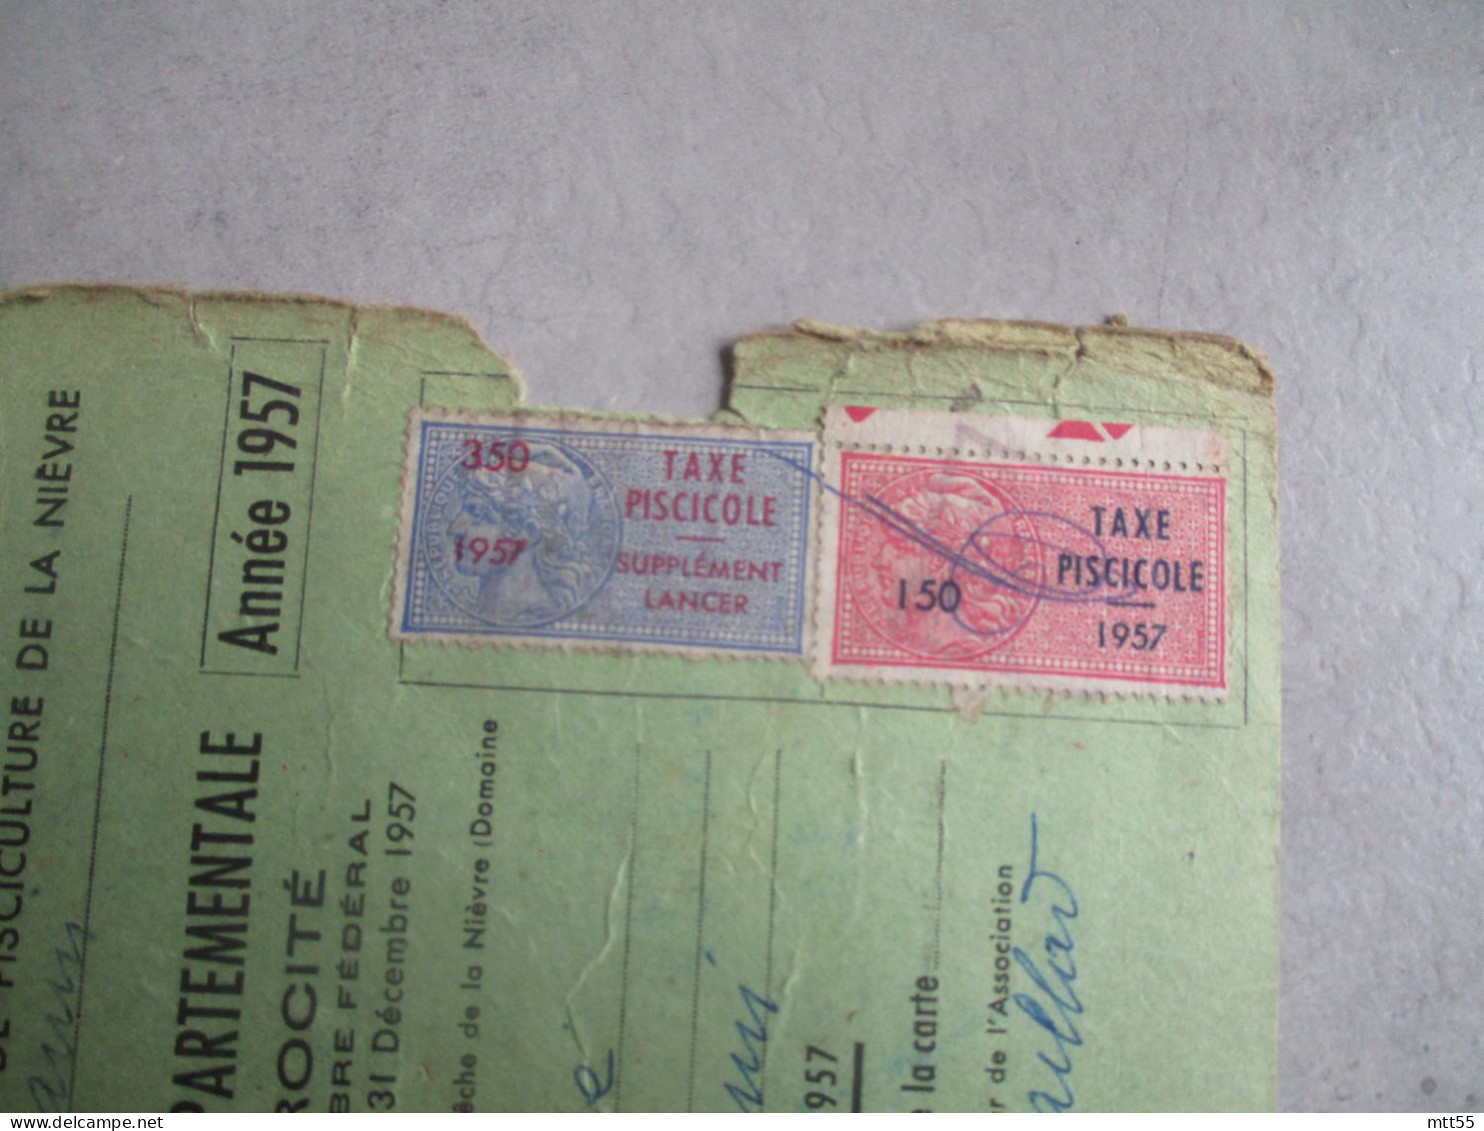 TAXE PISICOLE 1957 2 TIMBRE FISCAL FISCAUX SUR CARTE PECHE - Lettres & Documents